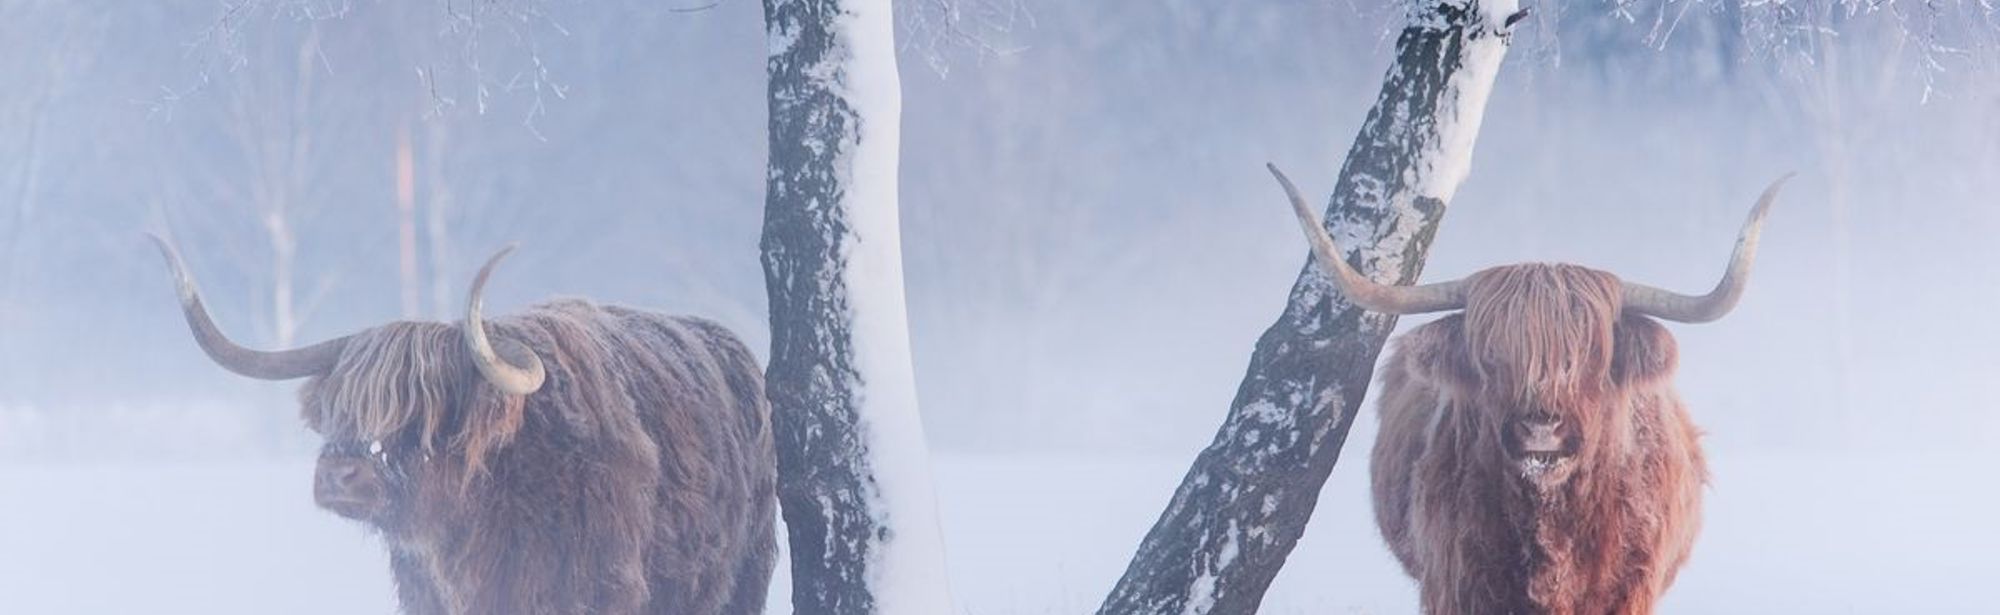 Twee schotse hooglanders staan bij een boom in de sneeuw